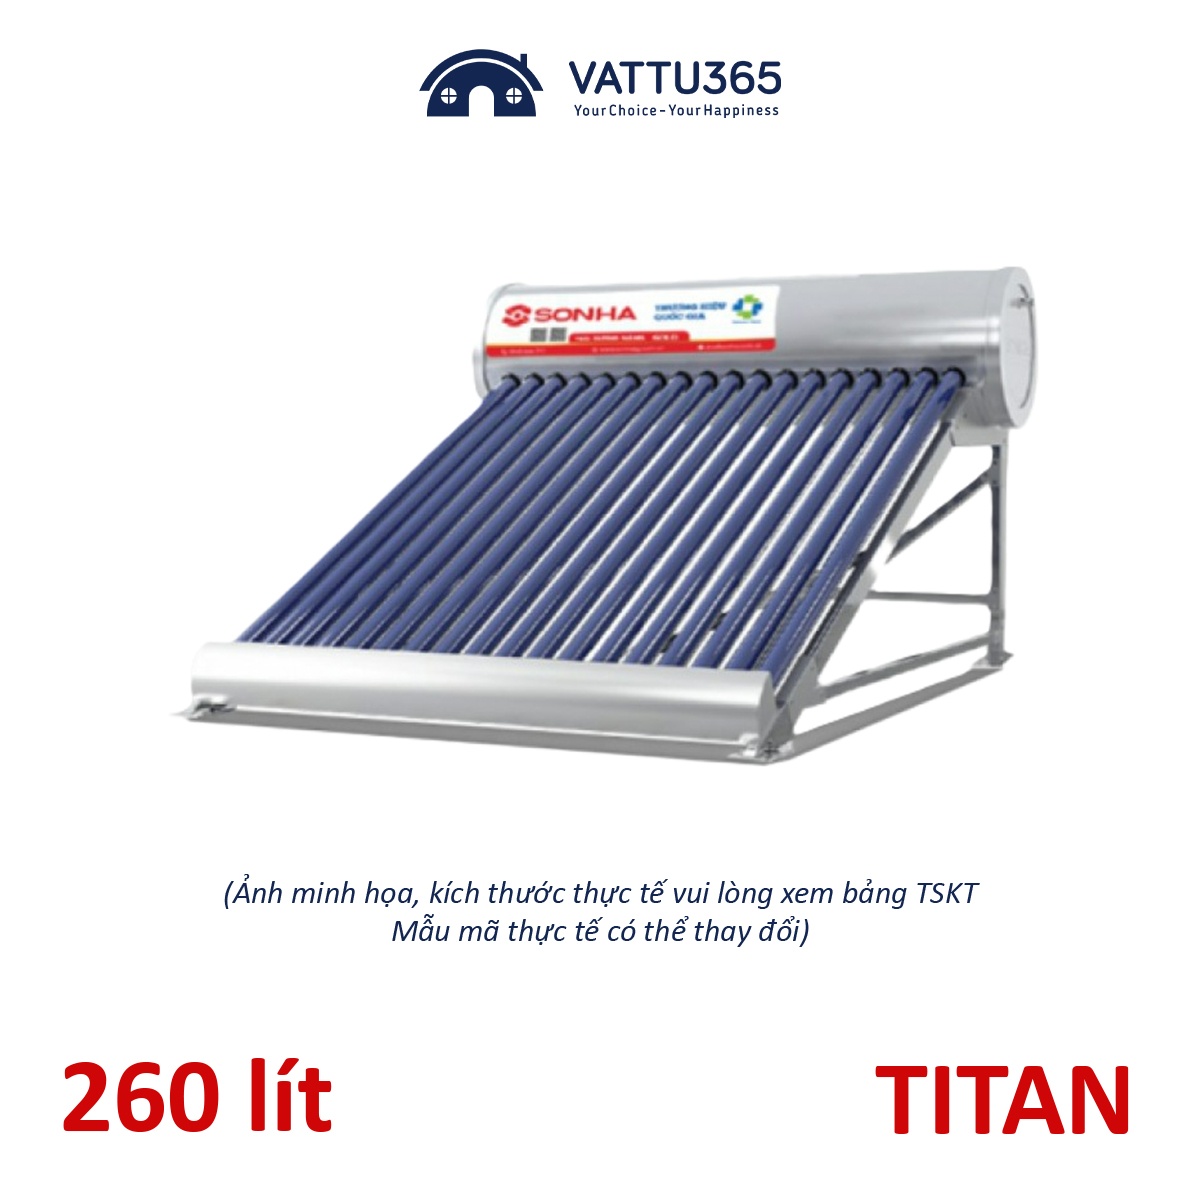 Máy nước nóng năng lượng mặt trời Sơn Hà TDN TITAN 260 Lít